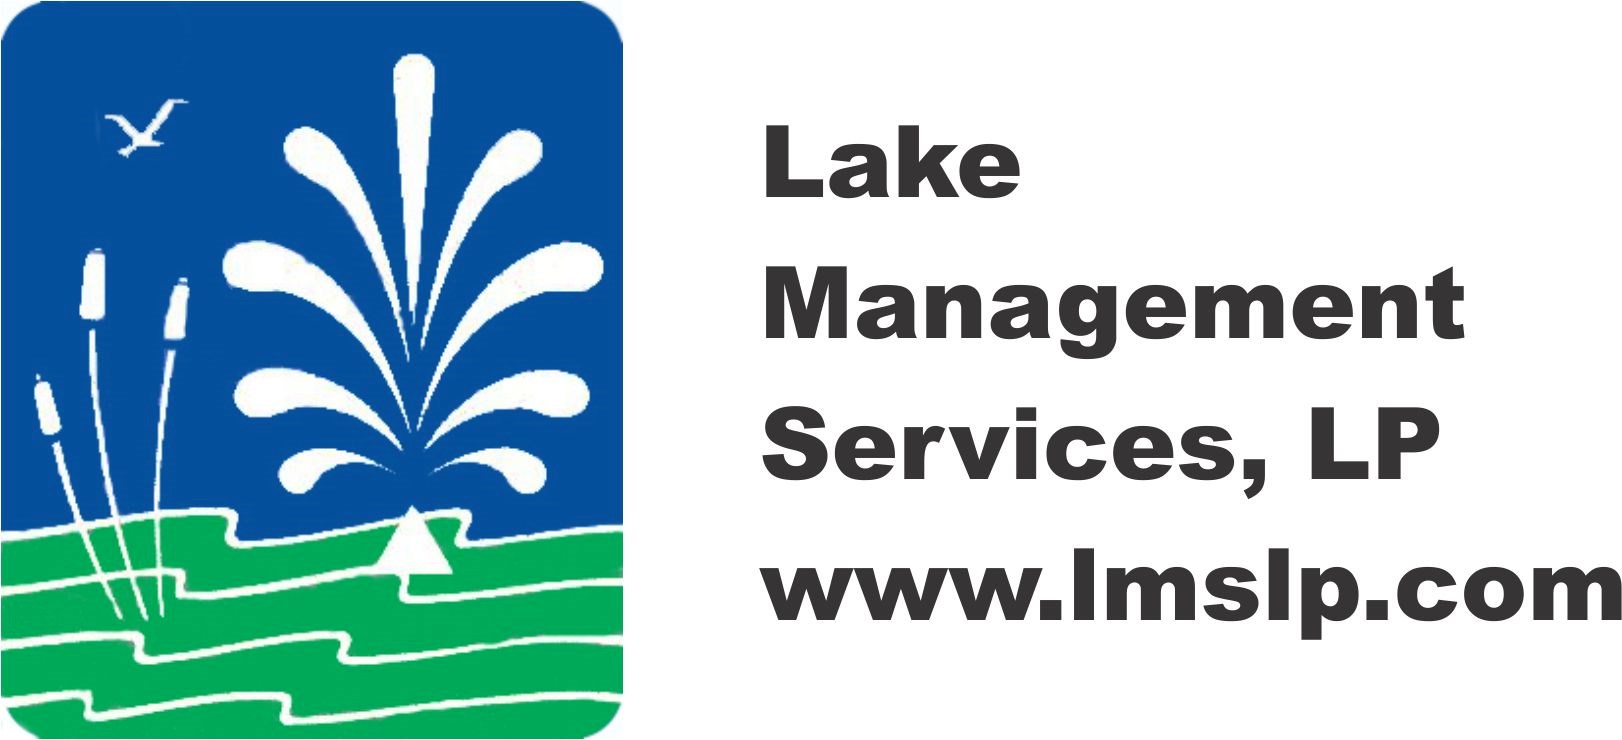 Lake Management Services, L.P.